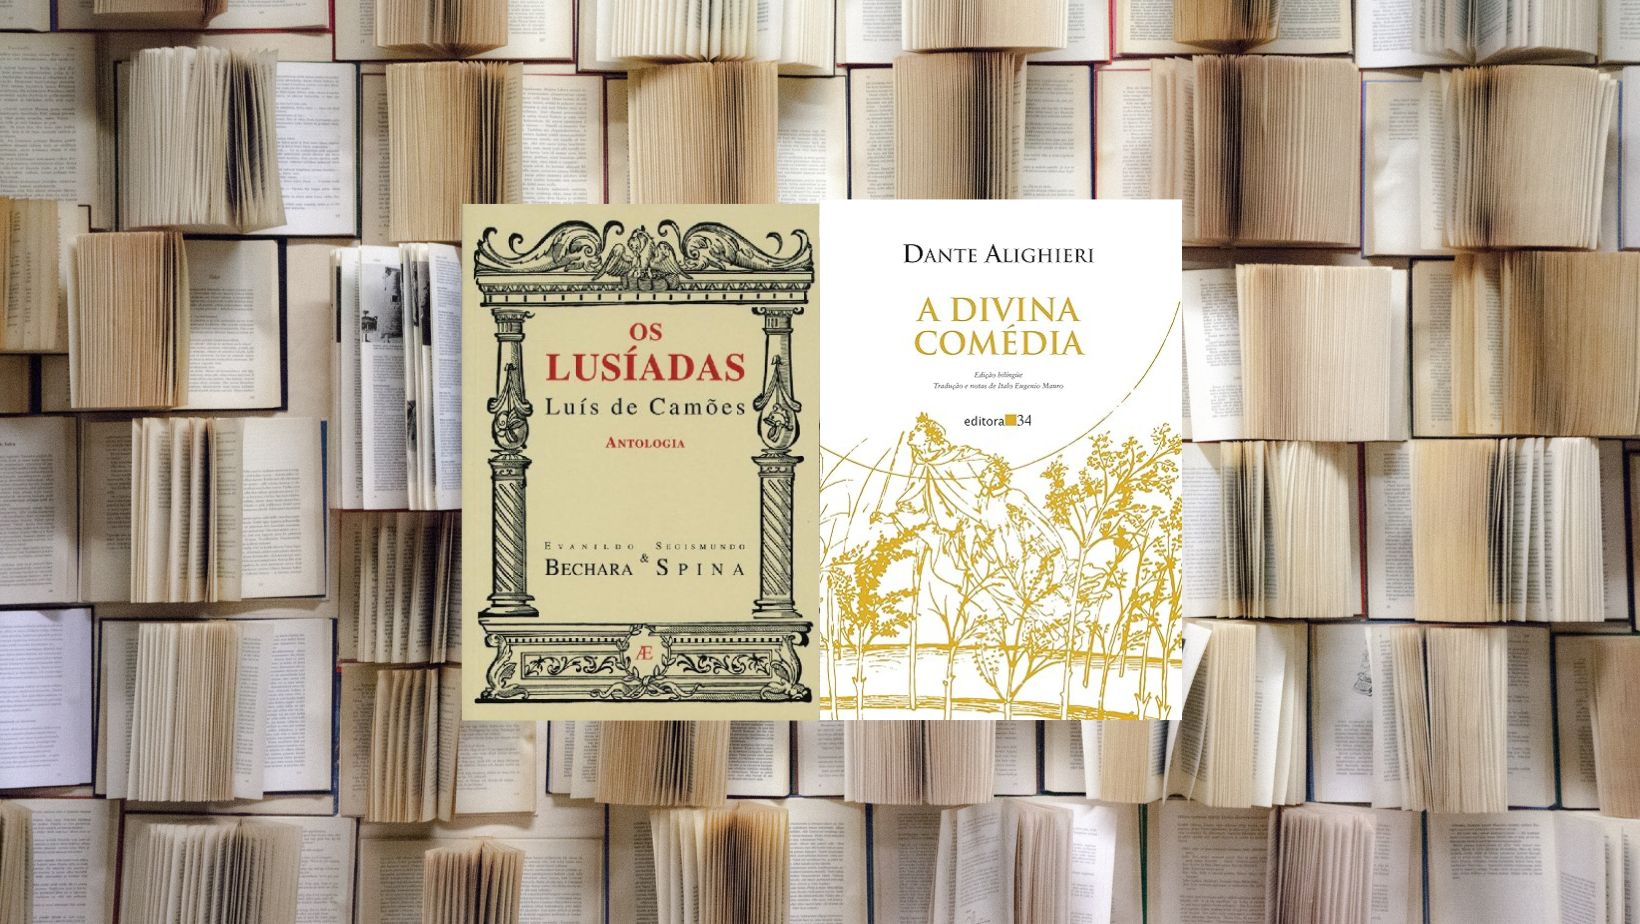 Comparação entre ‘Os Lusíadas’ de Camões e ‘A Divina Comédia’ de Dante, explorando jornadas épicas e espirituais na literatura renascentista.